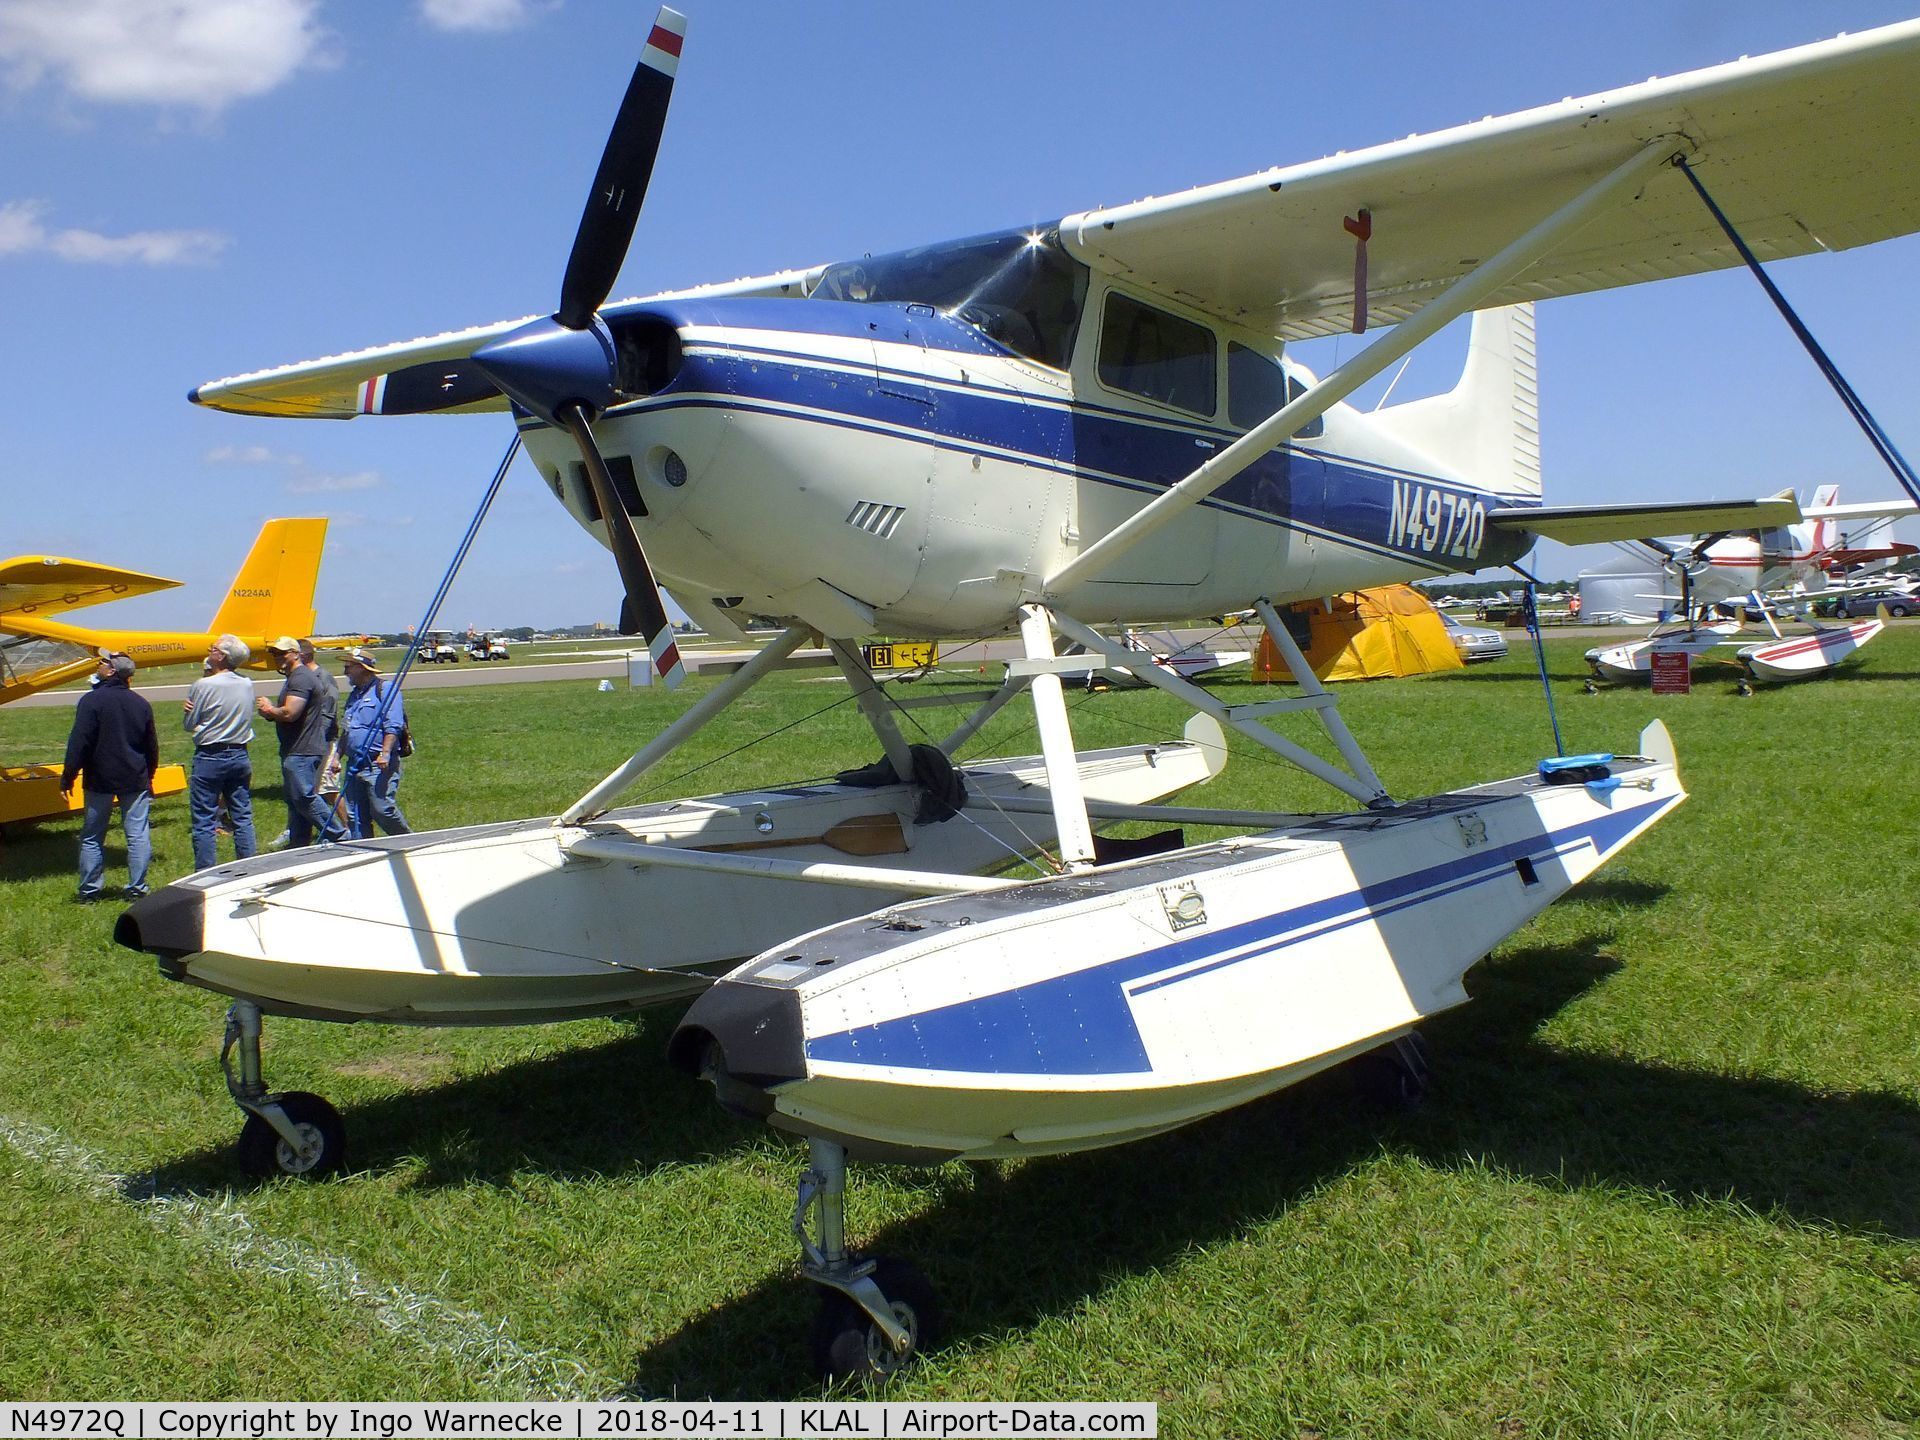 N4972Q, 1978 Cessna A185F Skywagon 185 C/N 18503591, Cessna A185F Skywagon on amphibious floats at 2018 Sun 'n Fun, Lakeland FL